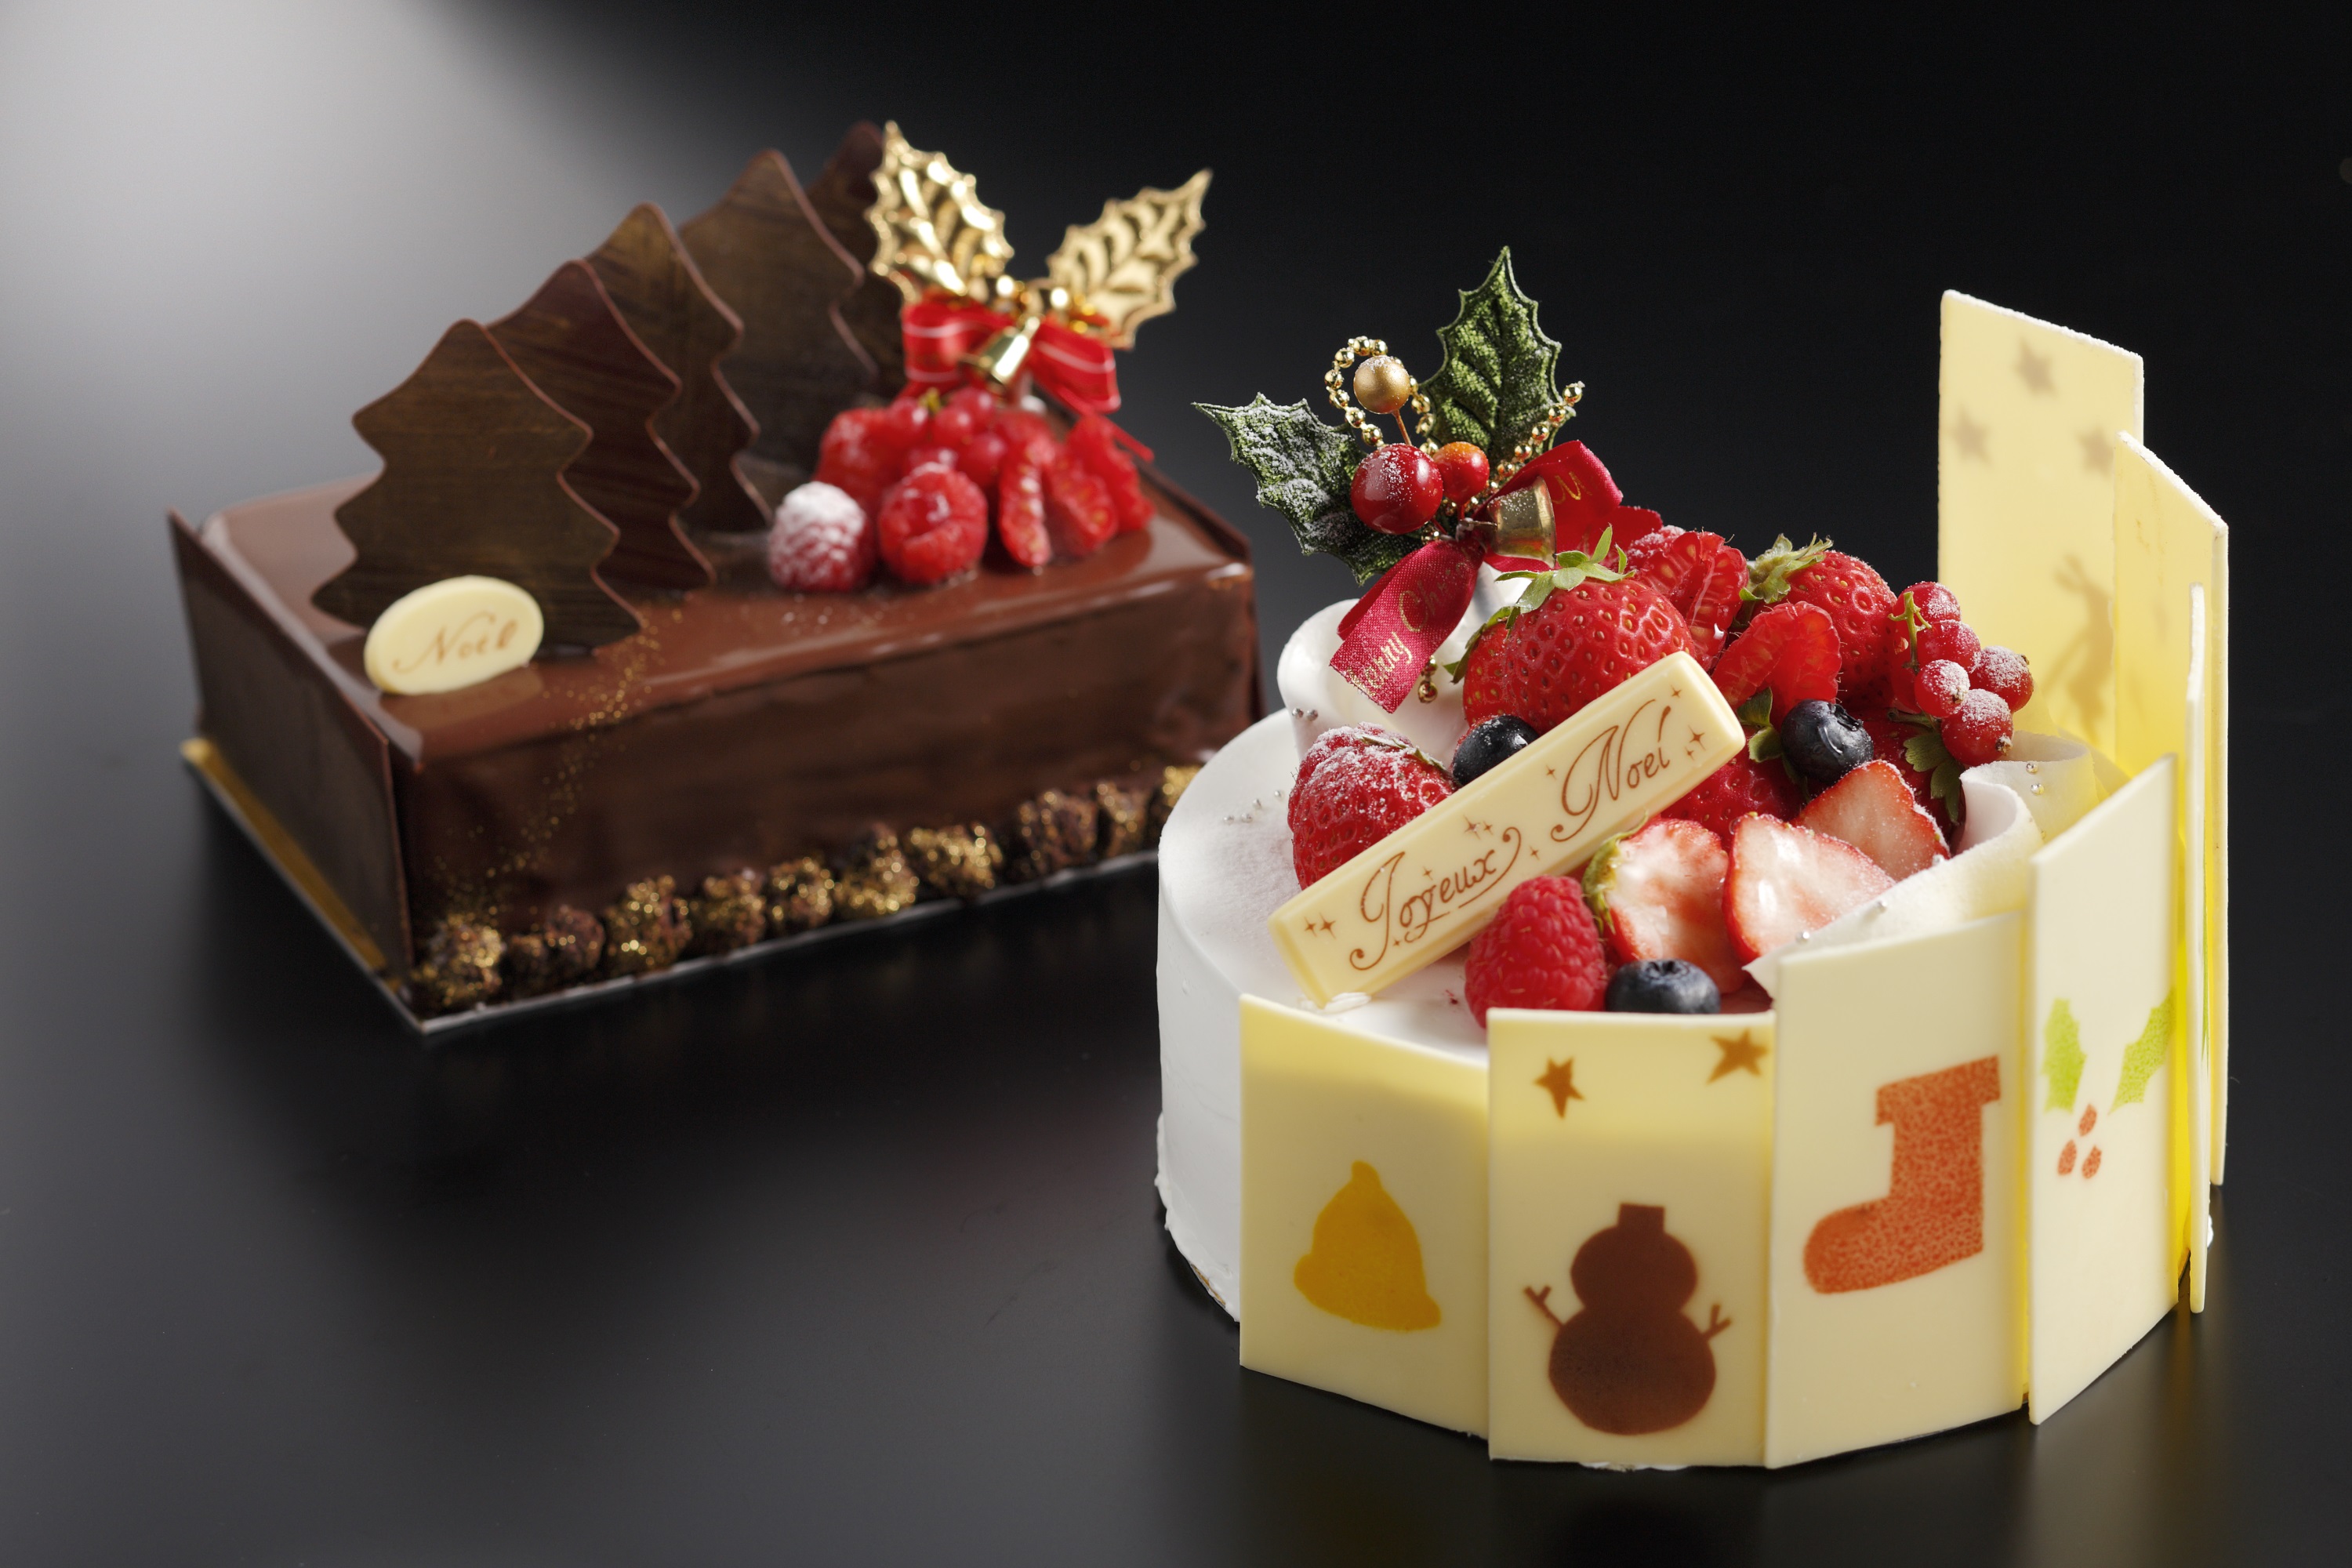 渋谷エクセルホテル東急 クリスマスケーキ15 のご案内 株式会社東急ホテルズのプレスリリース